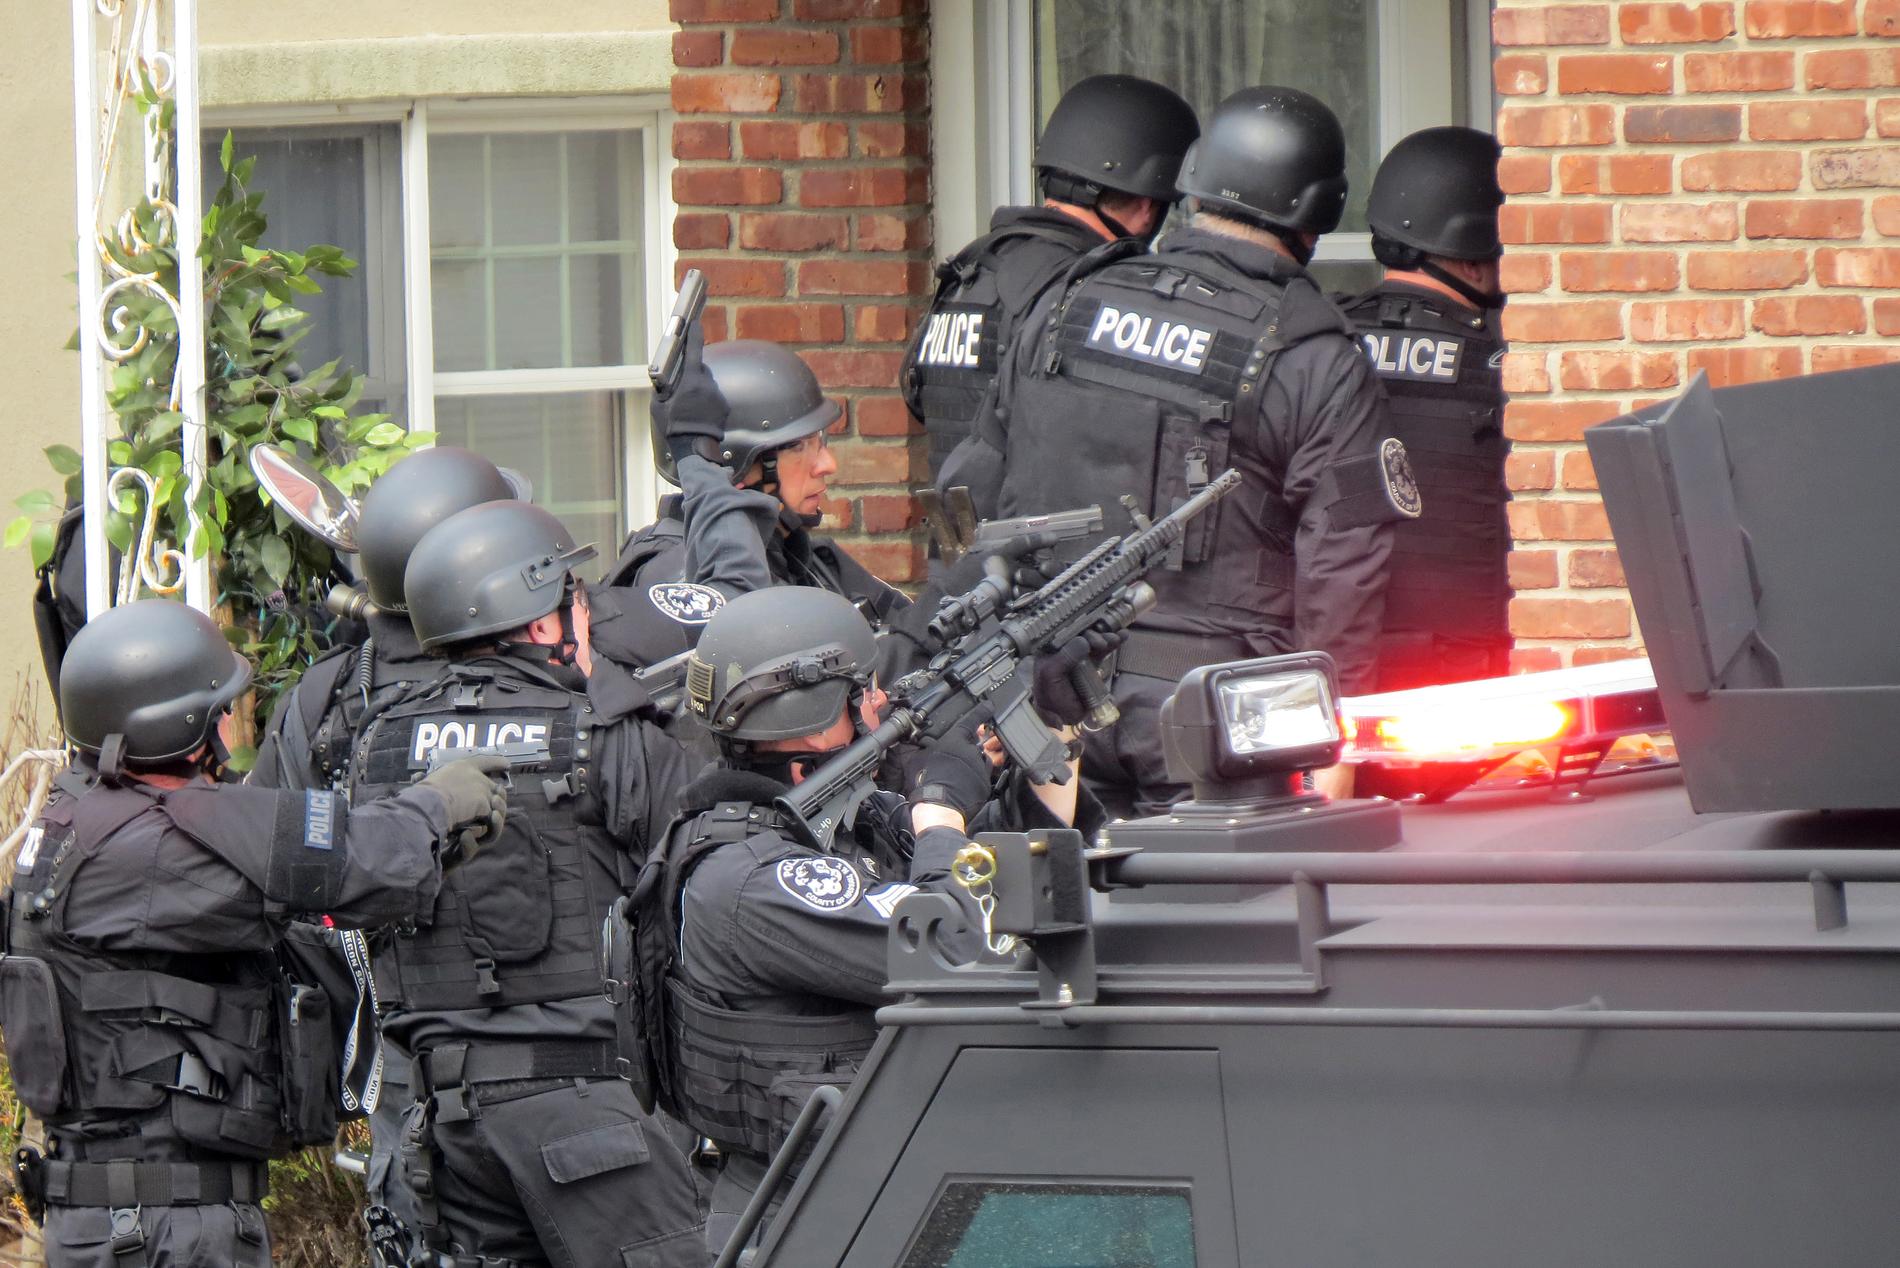 Polis i Long Beach, New York, bryter sig in i ett hem under våren 2014 efter ett larmsamtal om en beväpnad mördare. Samtalet visade sig vara en bluff från en okänd person som spelat datorspel mot en tonåring i huset.